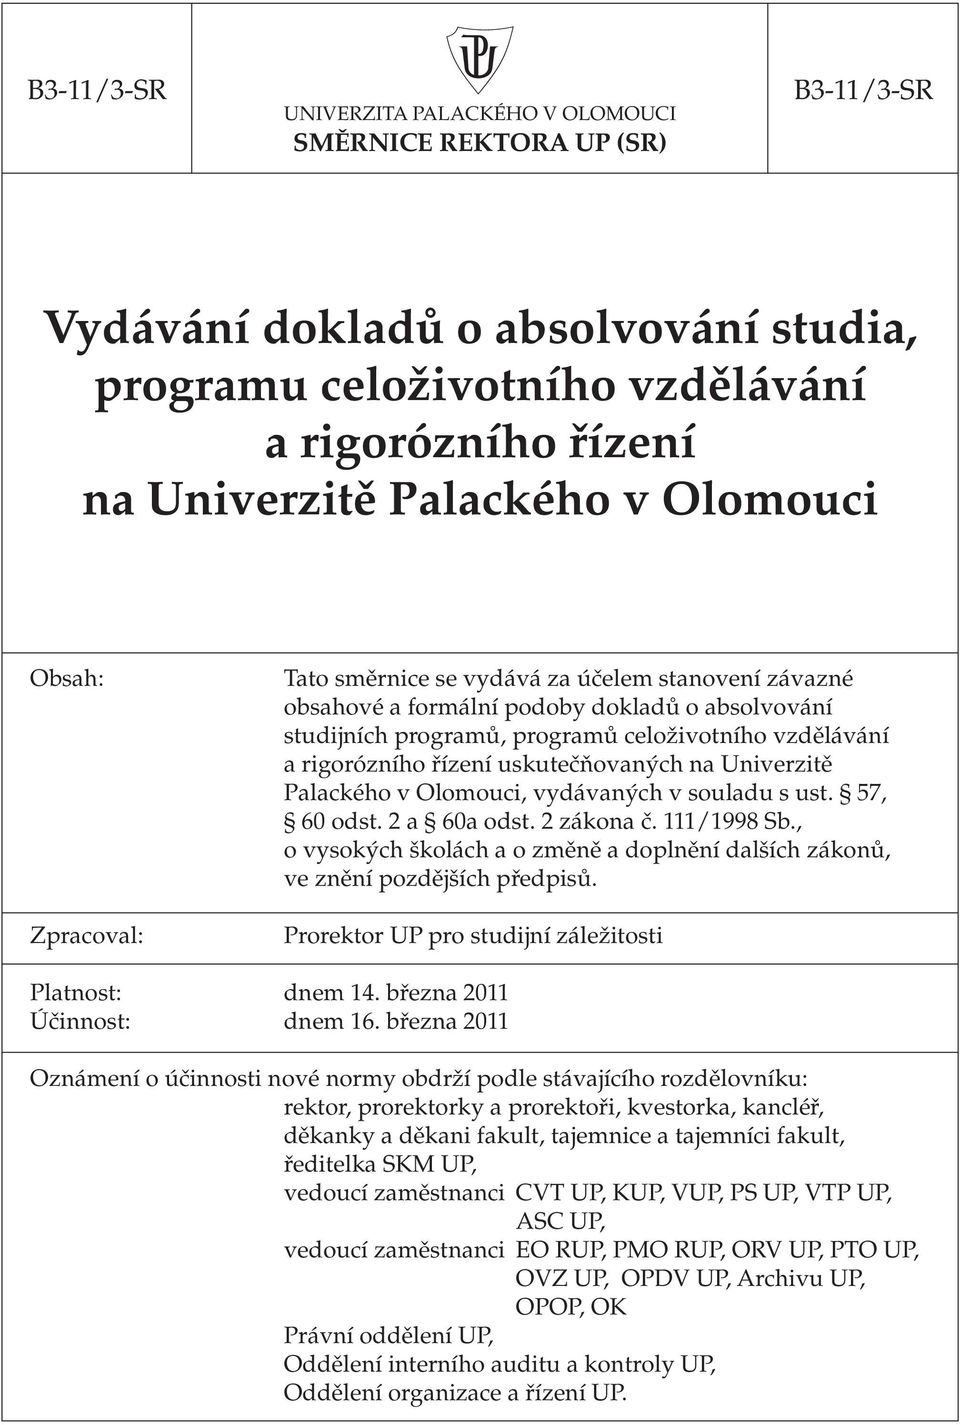 Univerzitě Palackého v Olomouci, vydávaných v souladu s ust. 57, 60 odst. 2 a 60a odst. 2 zákona č. 111/1998 Sb., o vysokých školách a o změně a doplnění dalších zákonů, ve znění pozdějších předpisů.